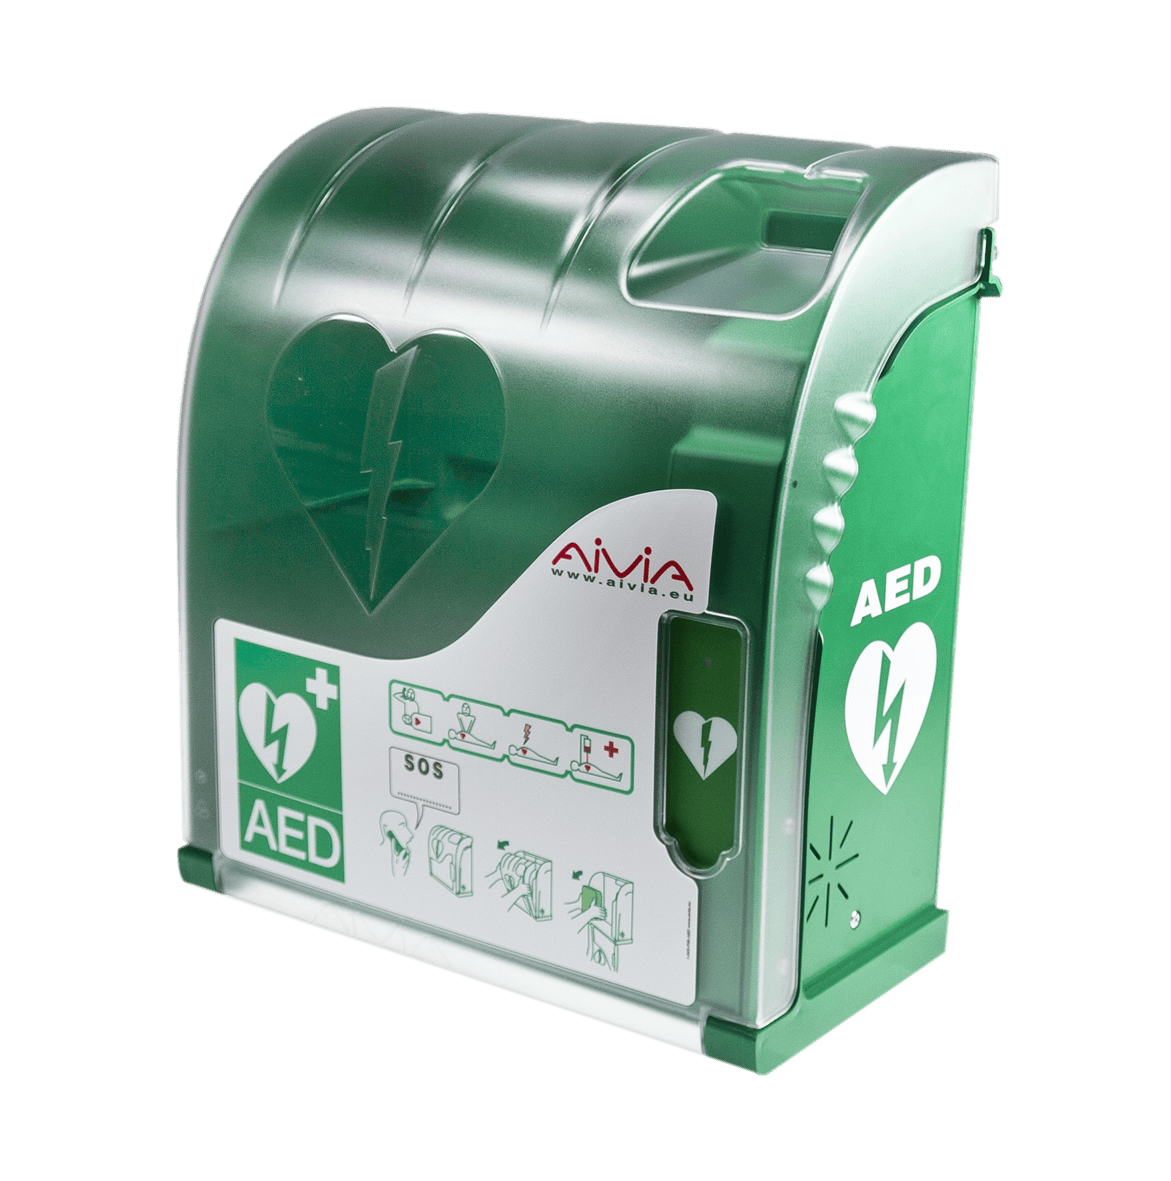 Aivia 200 Outdoor Defibrillator Cabinet